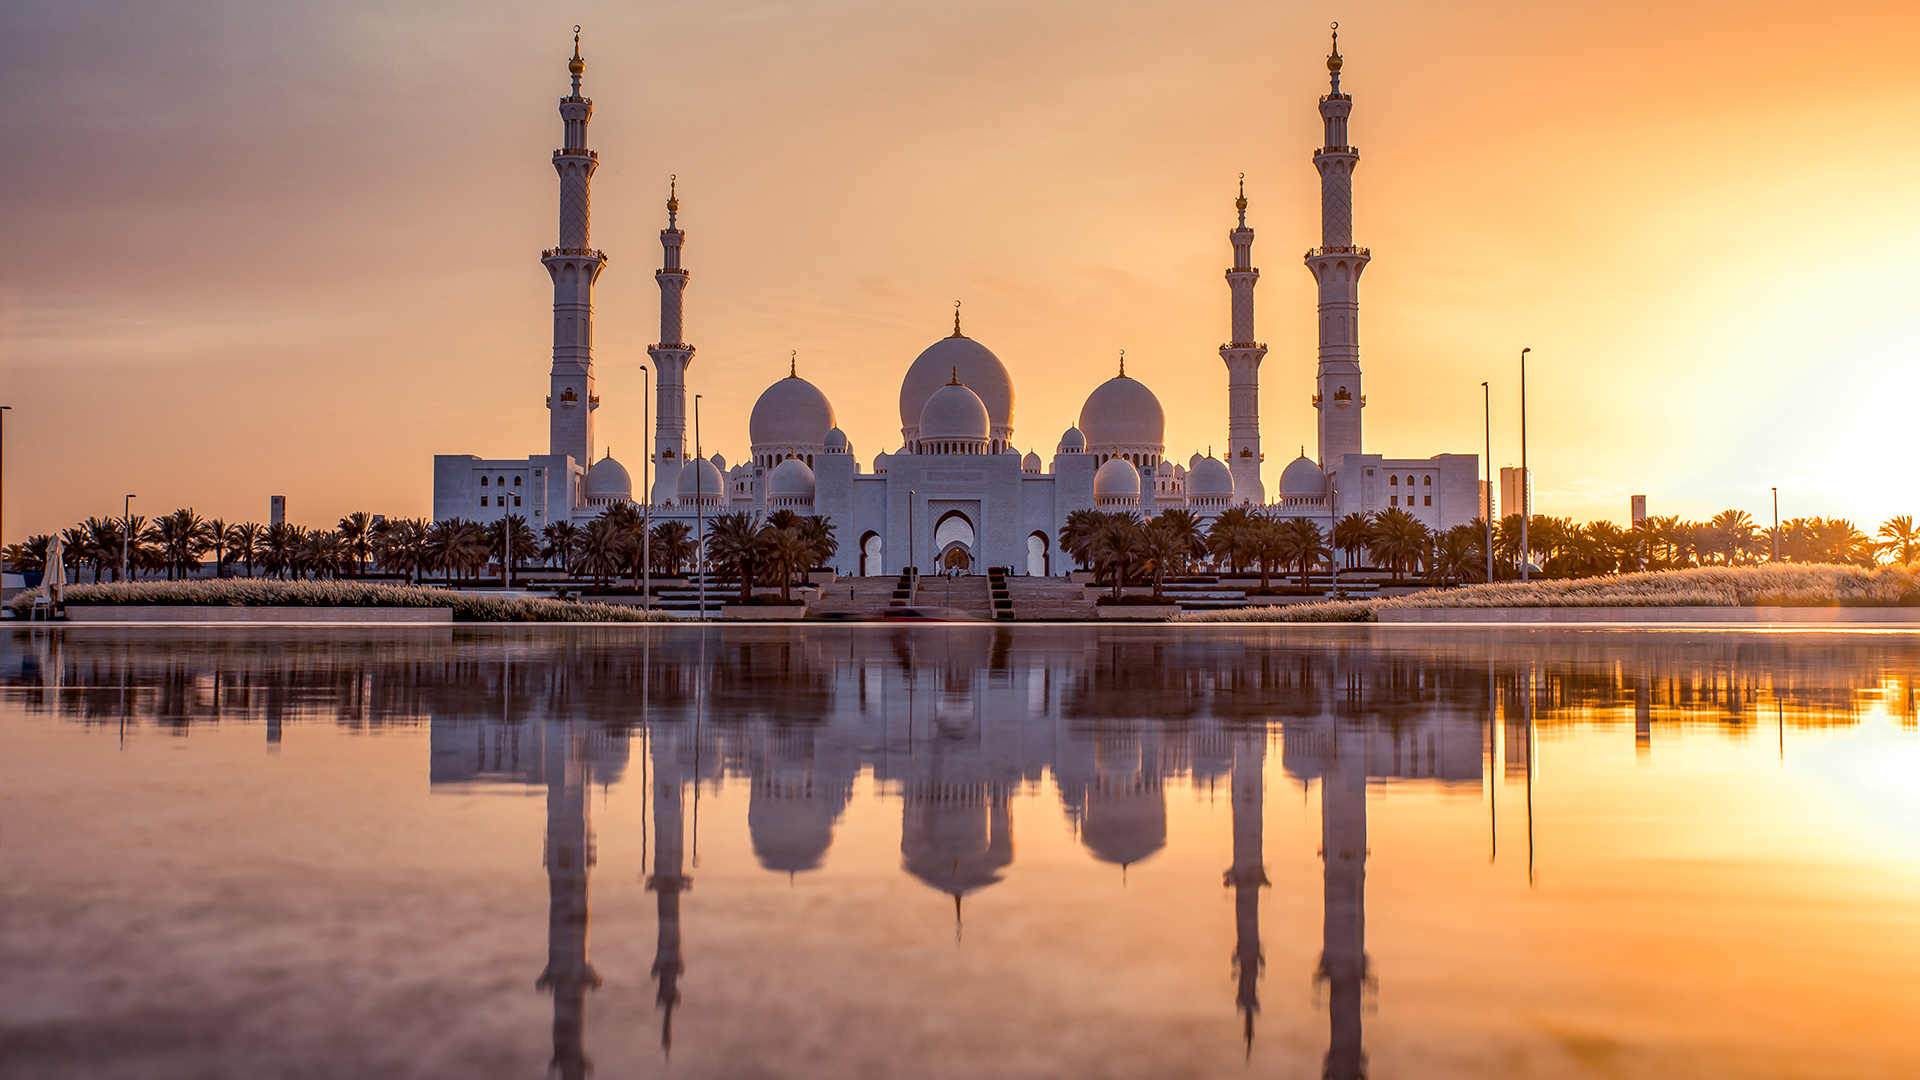 迪拜斯拉夫白清真寺 Slav White Mosque, Dubai 637414183(1).jpg